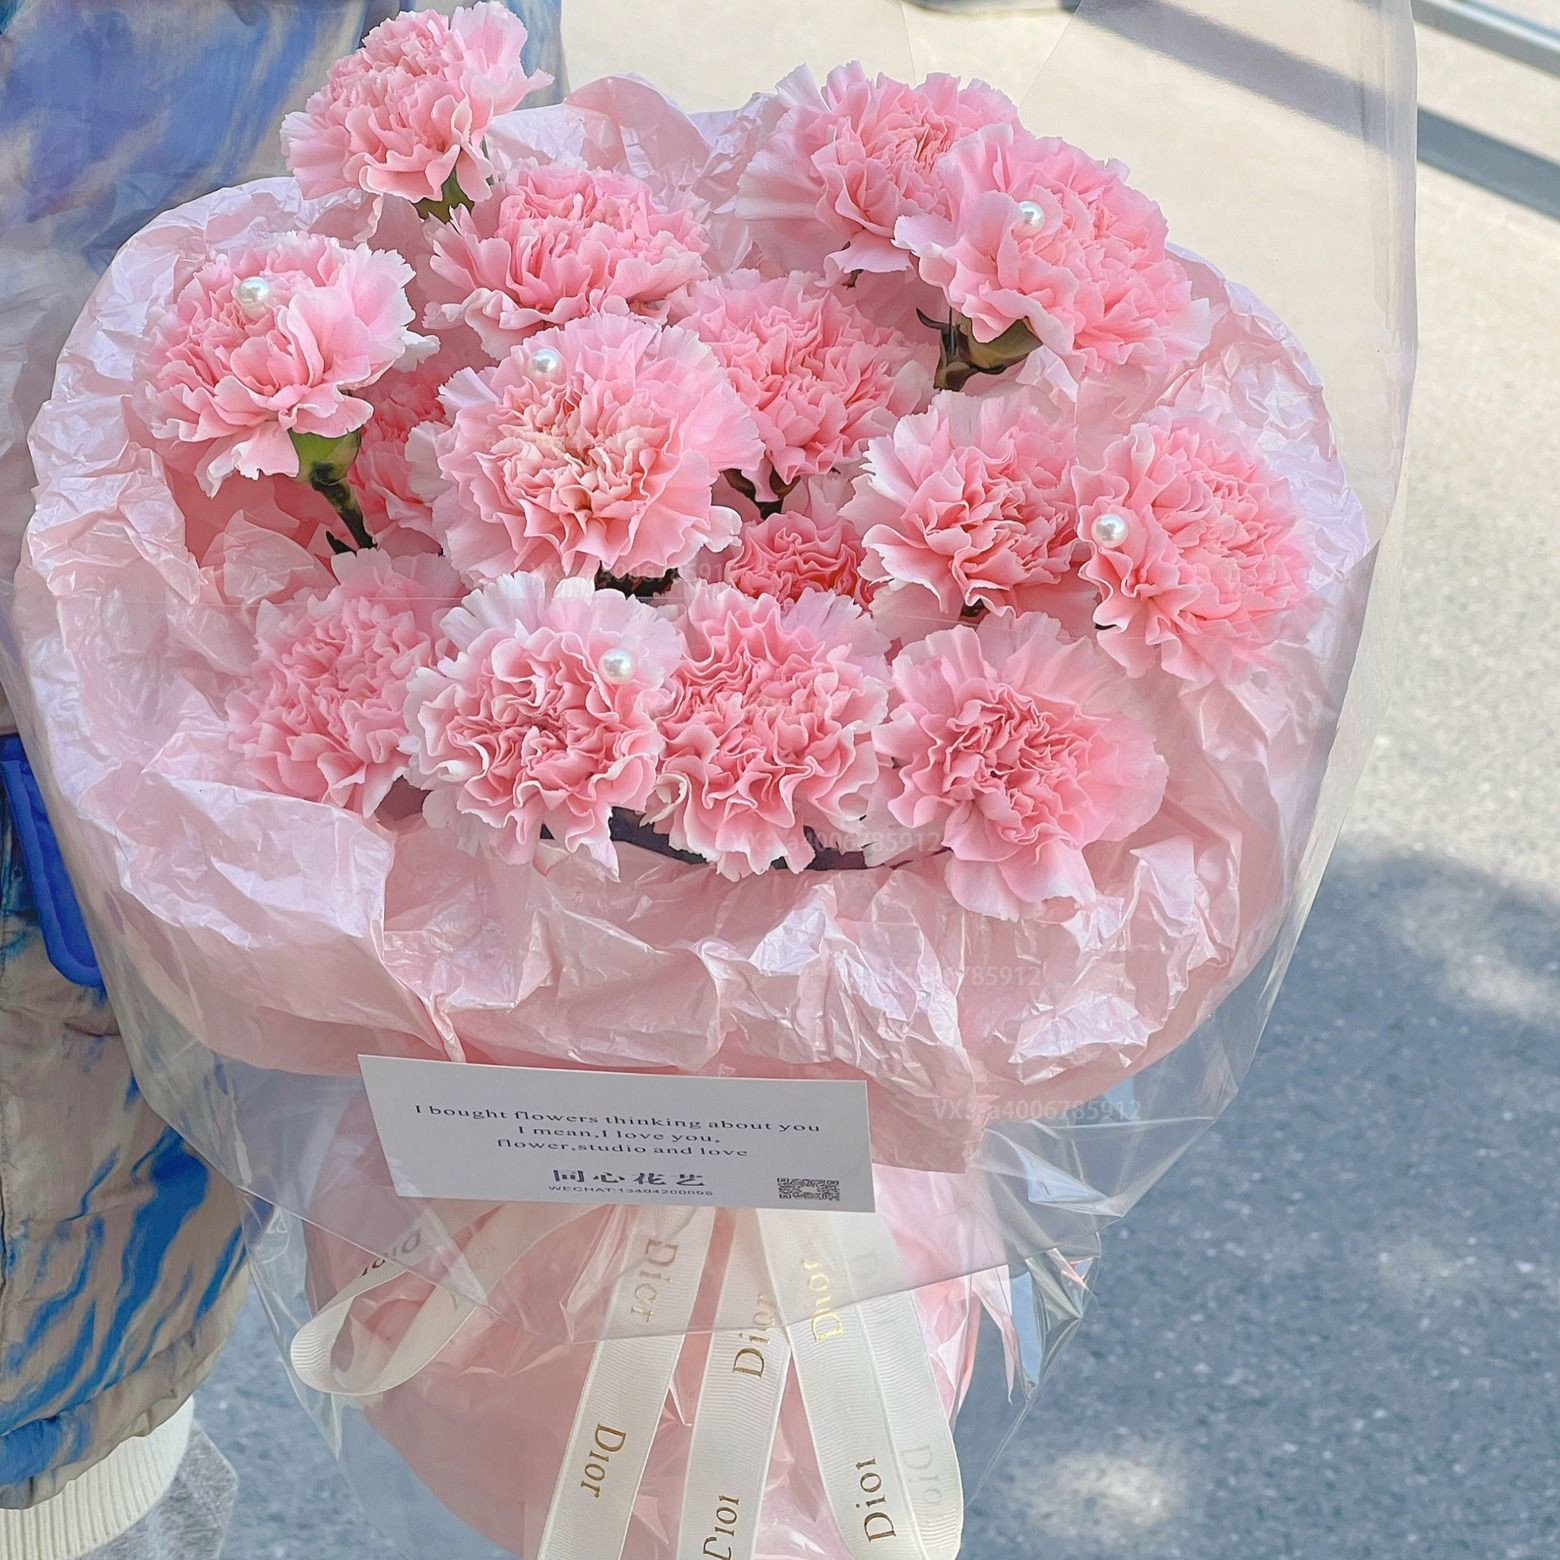 【心怀感恩】鲜花21朵粉康乃馨花束生日鲜花生日礼物送爱人长辈花店送花上门鲜花配送